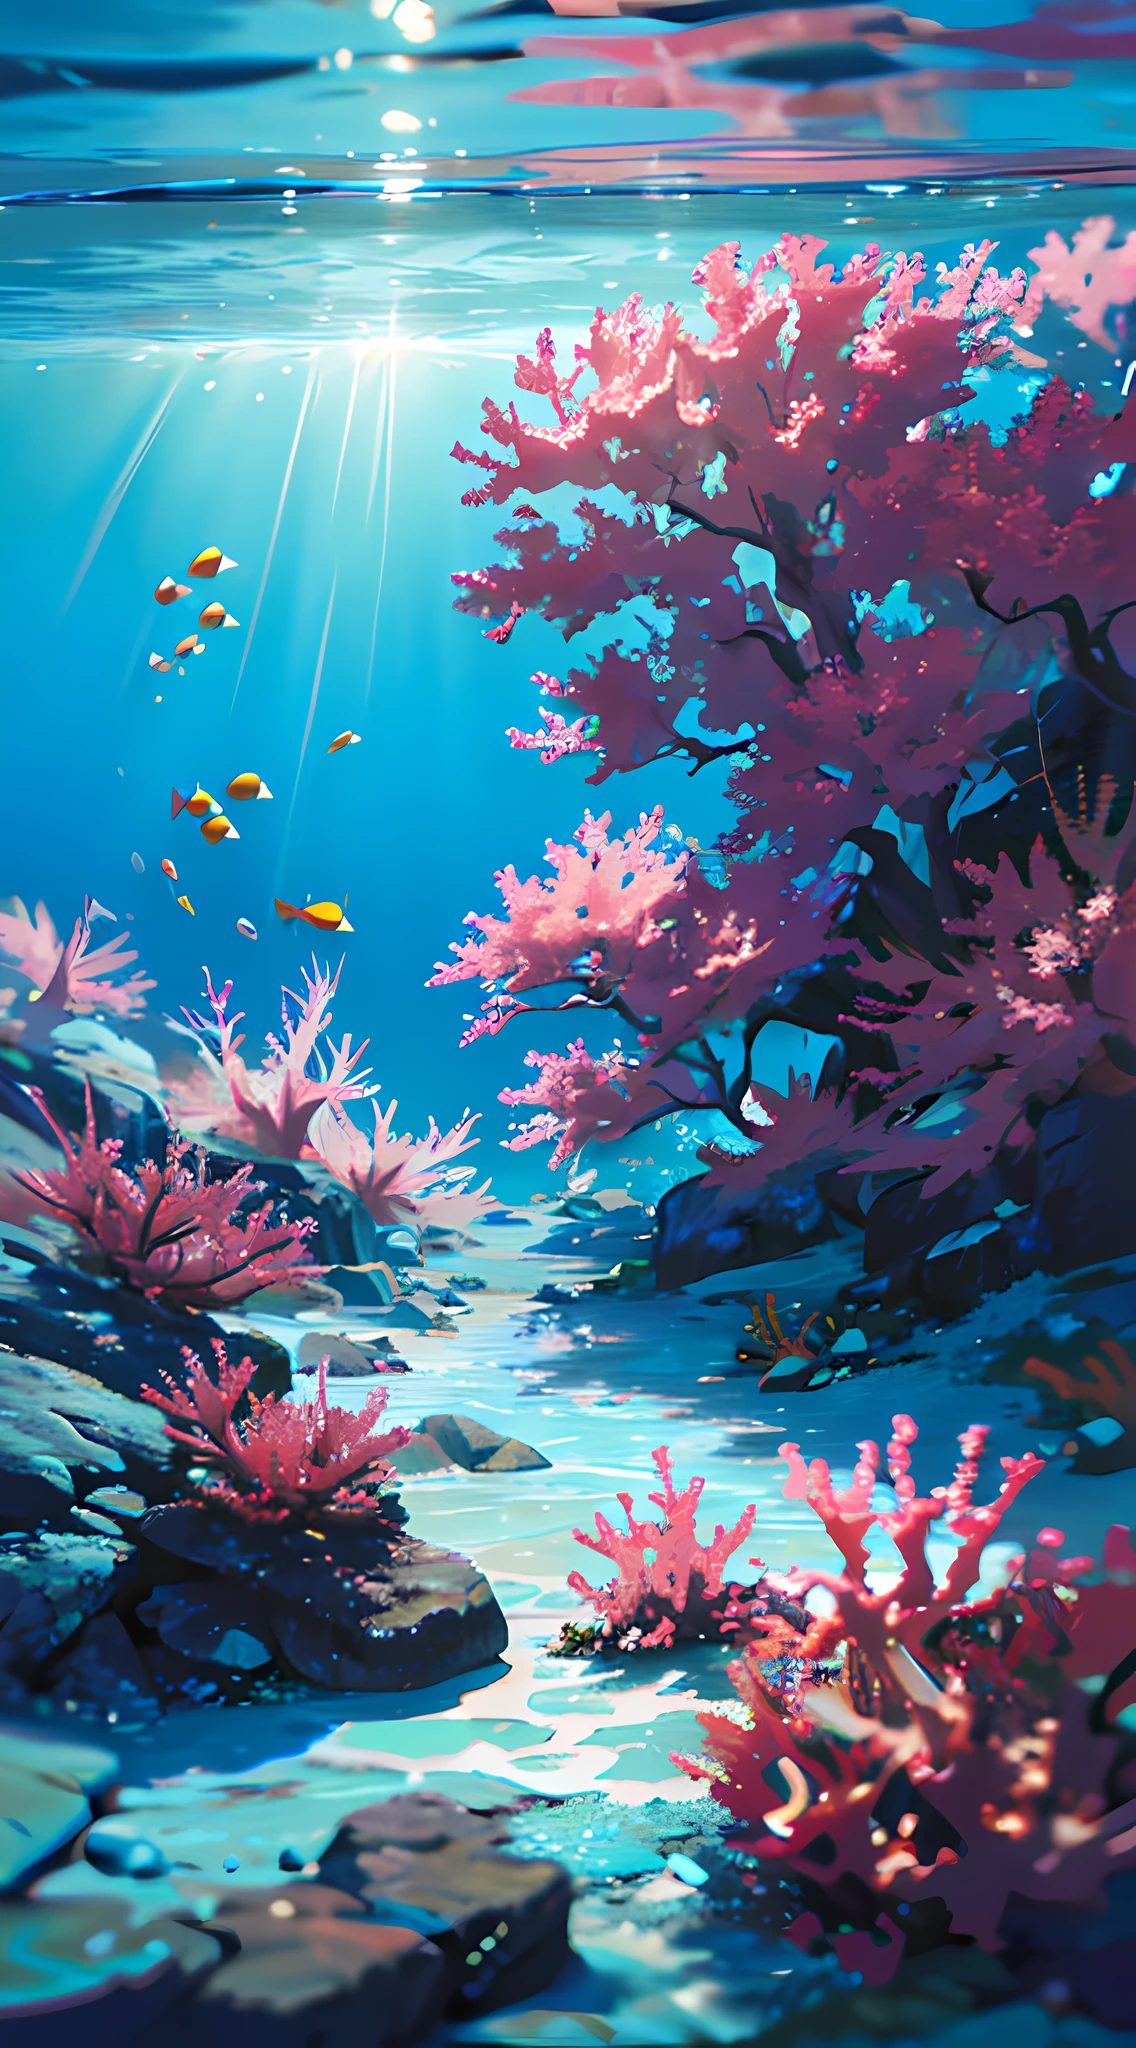 (傑作, 最高品質:1.2), (人間はいない, 崖, 水中, 視点, 下から:1.5), 8k, RAW写真, 不条理な, 美しいサンゴ礁, 岩, 非常に小さな魚がたくさん, 色とりどりの熱帯魚, 光漏れ, 被写界深度, 素晴らしい景色, フィルムグレイン, 色収差, ダイナミックライティング, ドラマチックな照明, 高解像度, 写実的な, フィルムグレイン, 色収差, 高解像度, 超詳細, 細かく詳細に, 非常に詳細な, 影, シャープなフォーカス